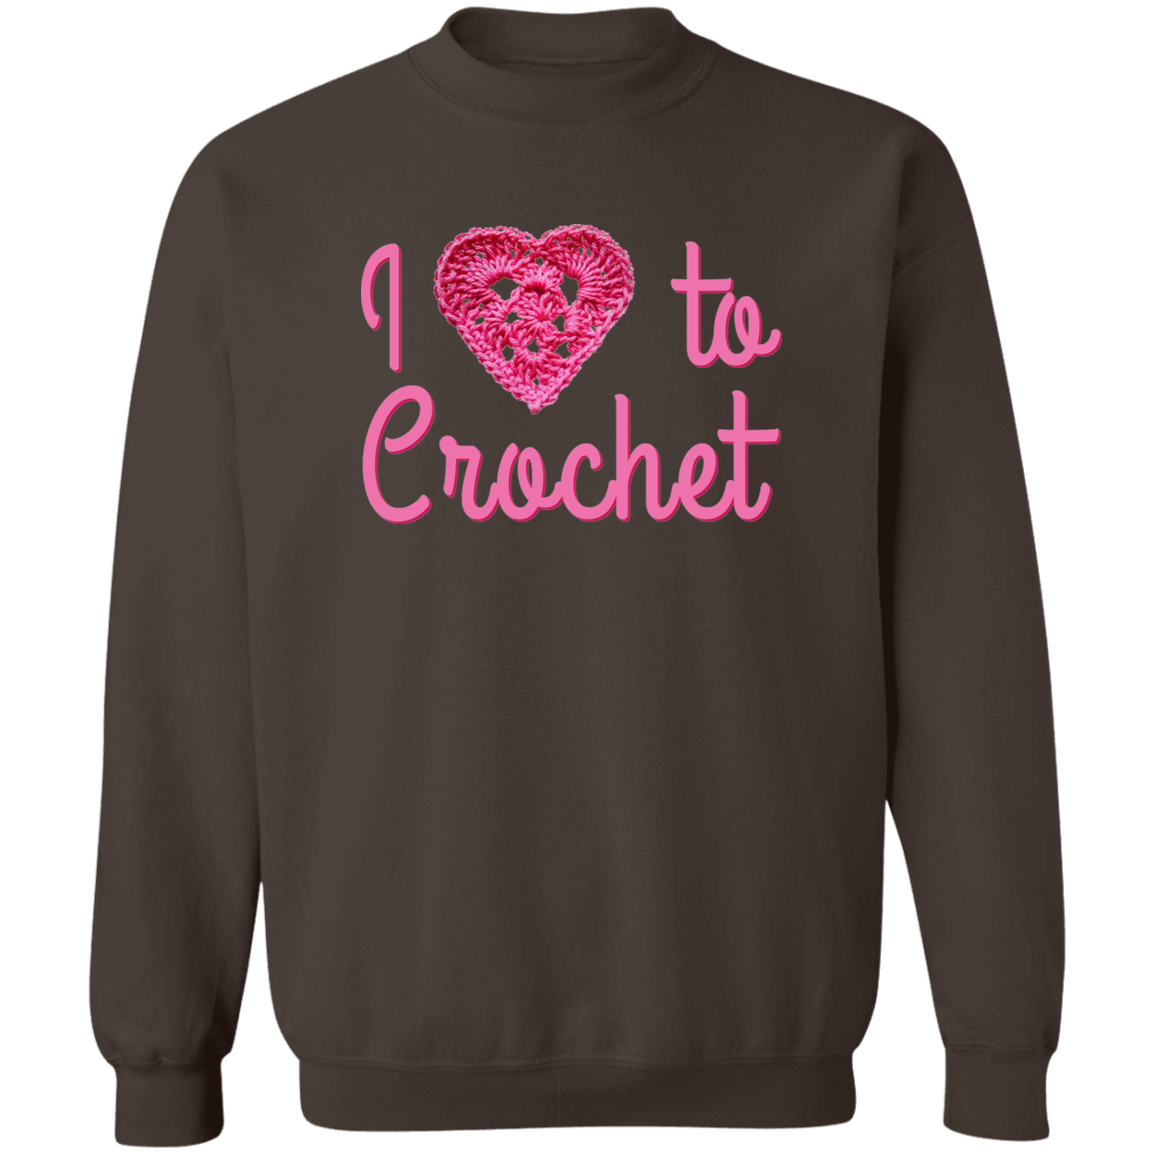 I Heart to Crochet Sweatshirt